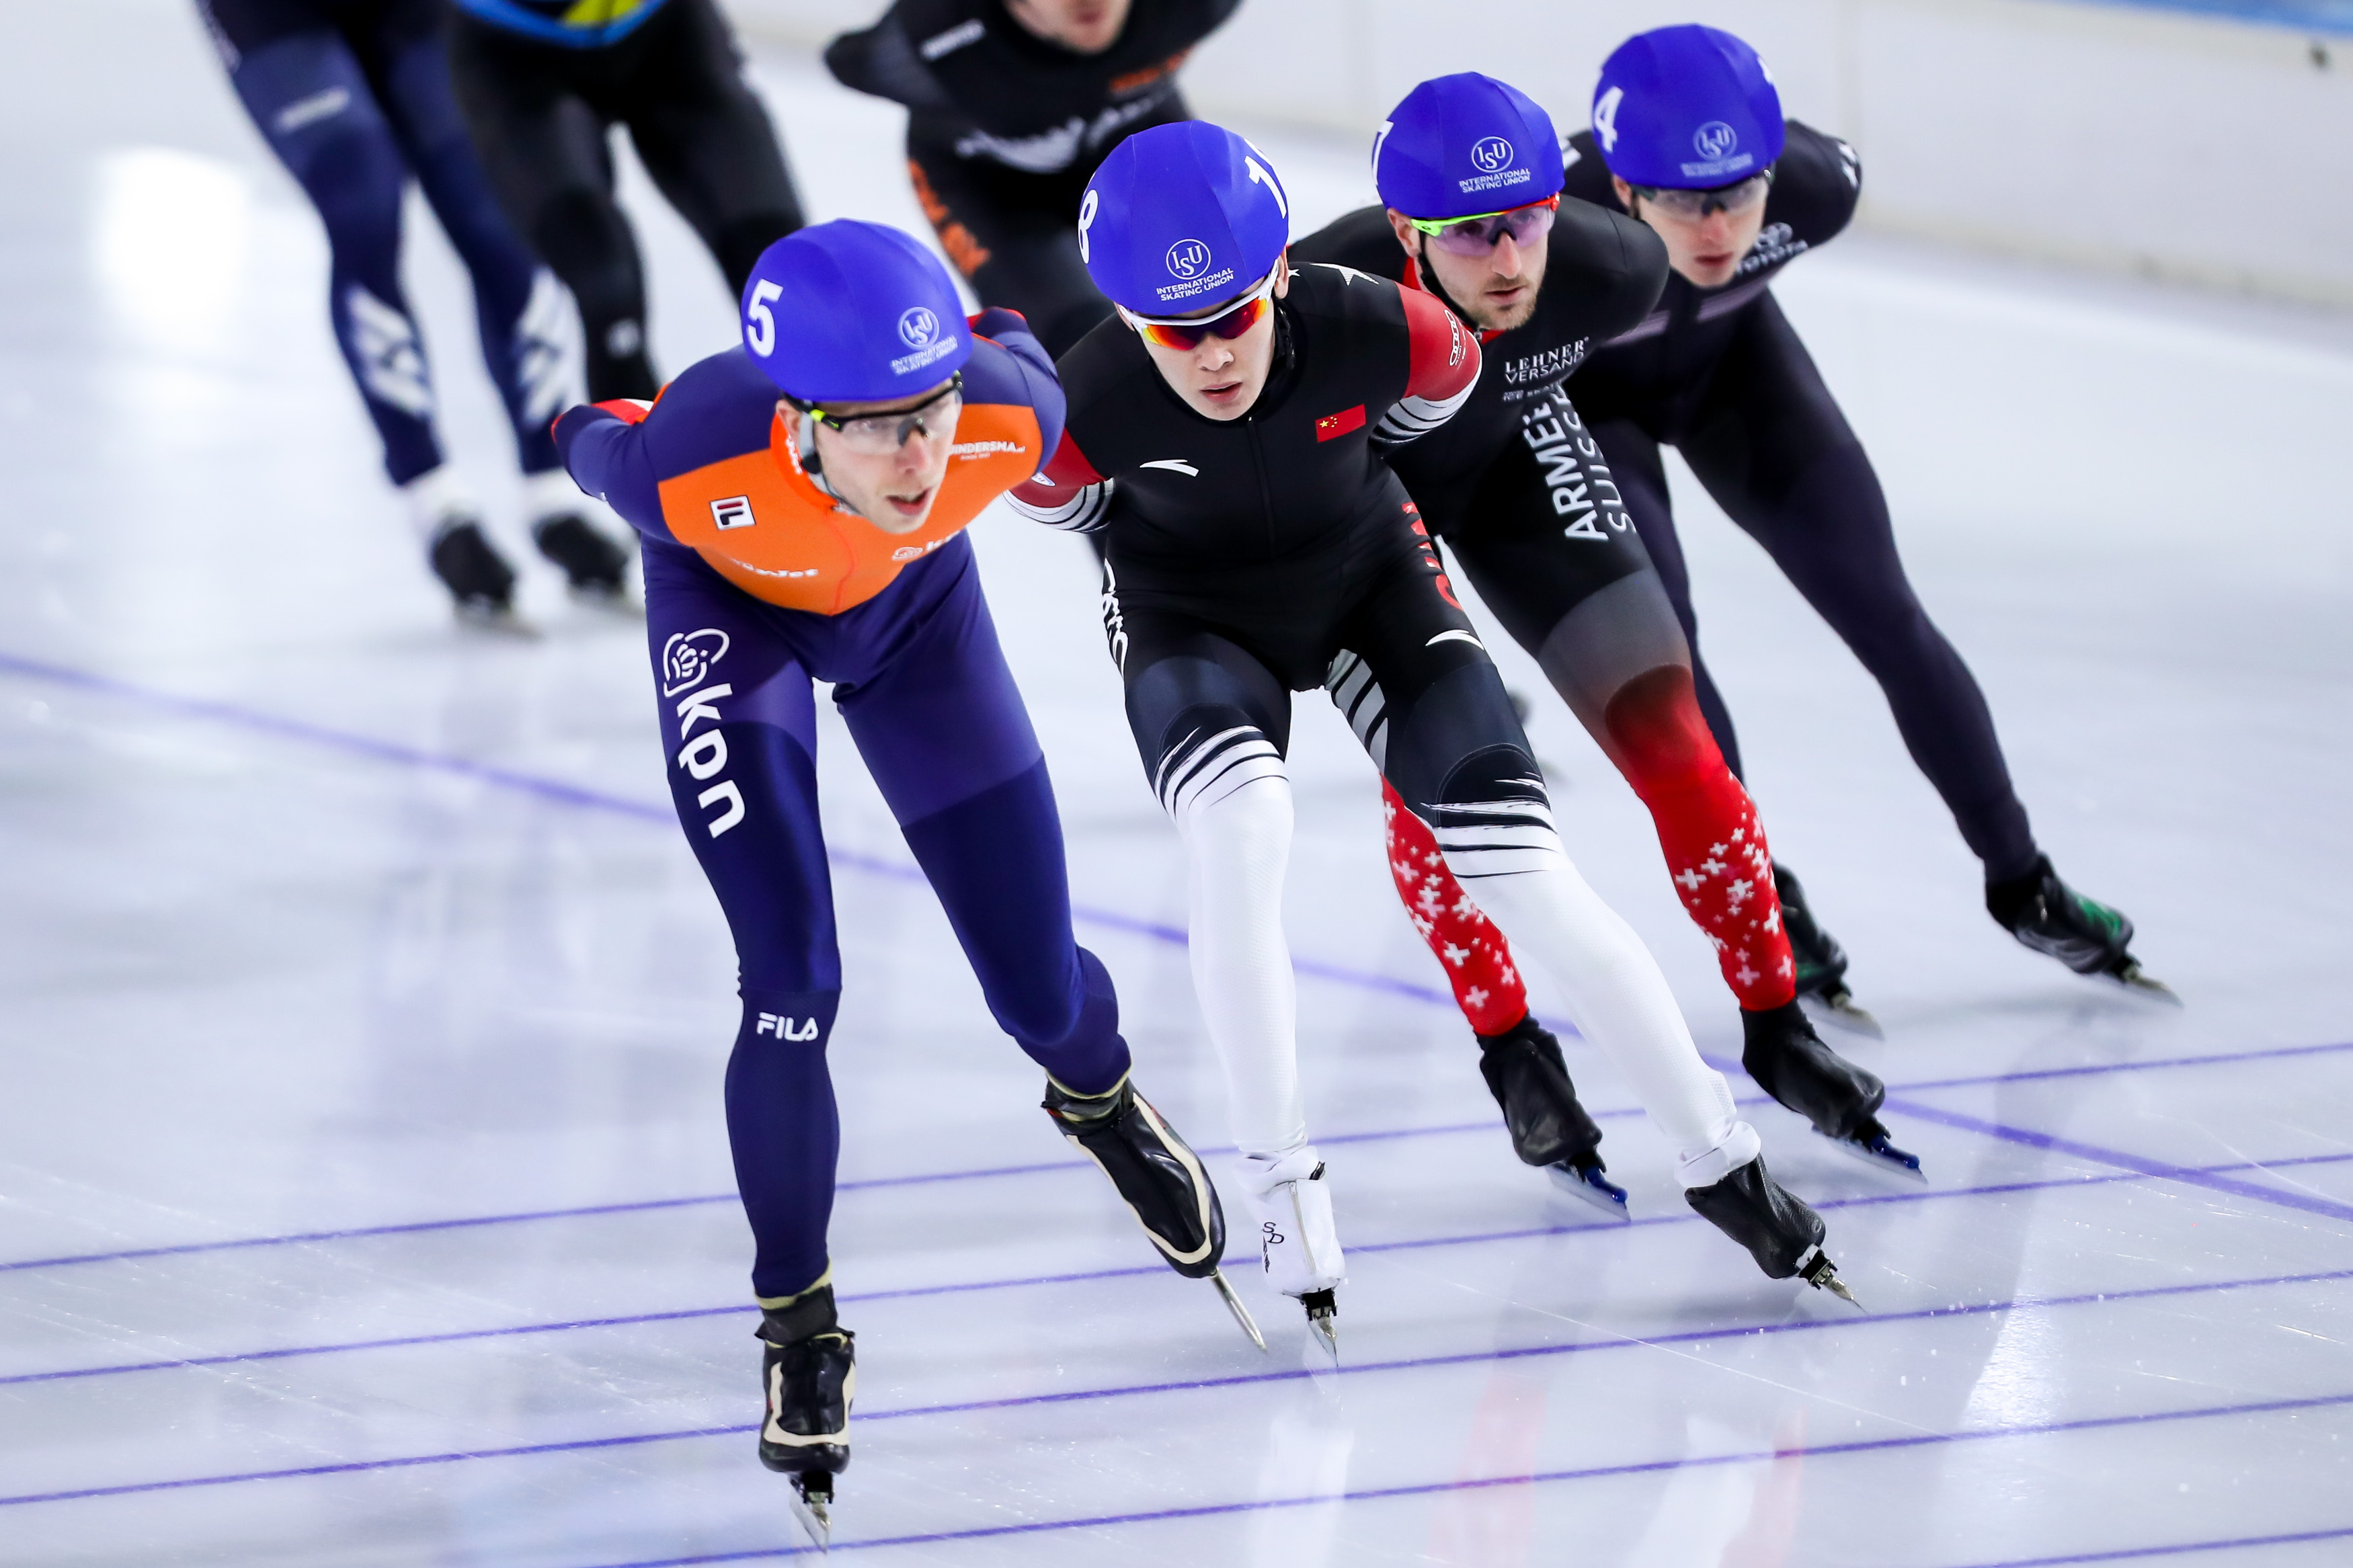 速度滑冰——世界杯总决赛:哈那哈提·木哈买提获男子集体出发赛季第